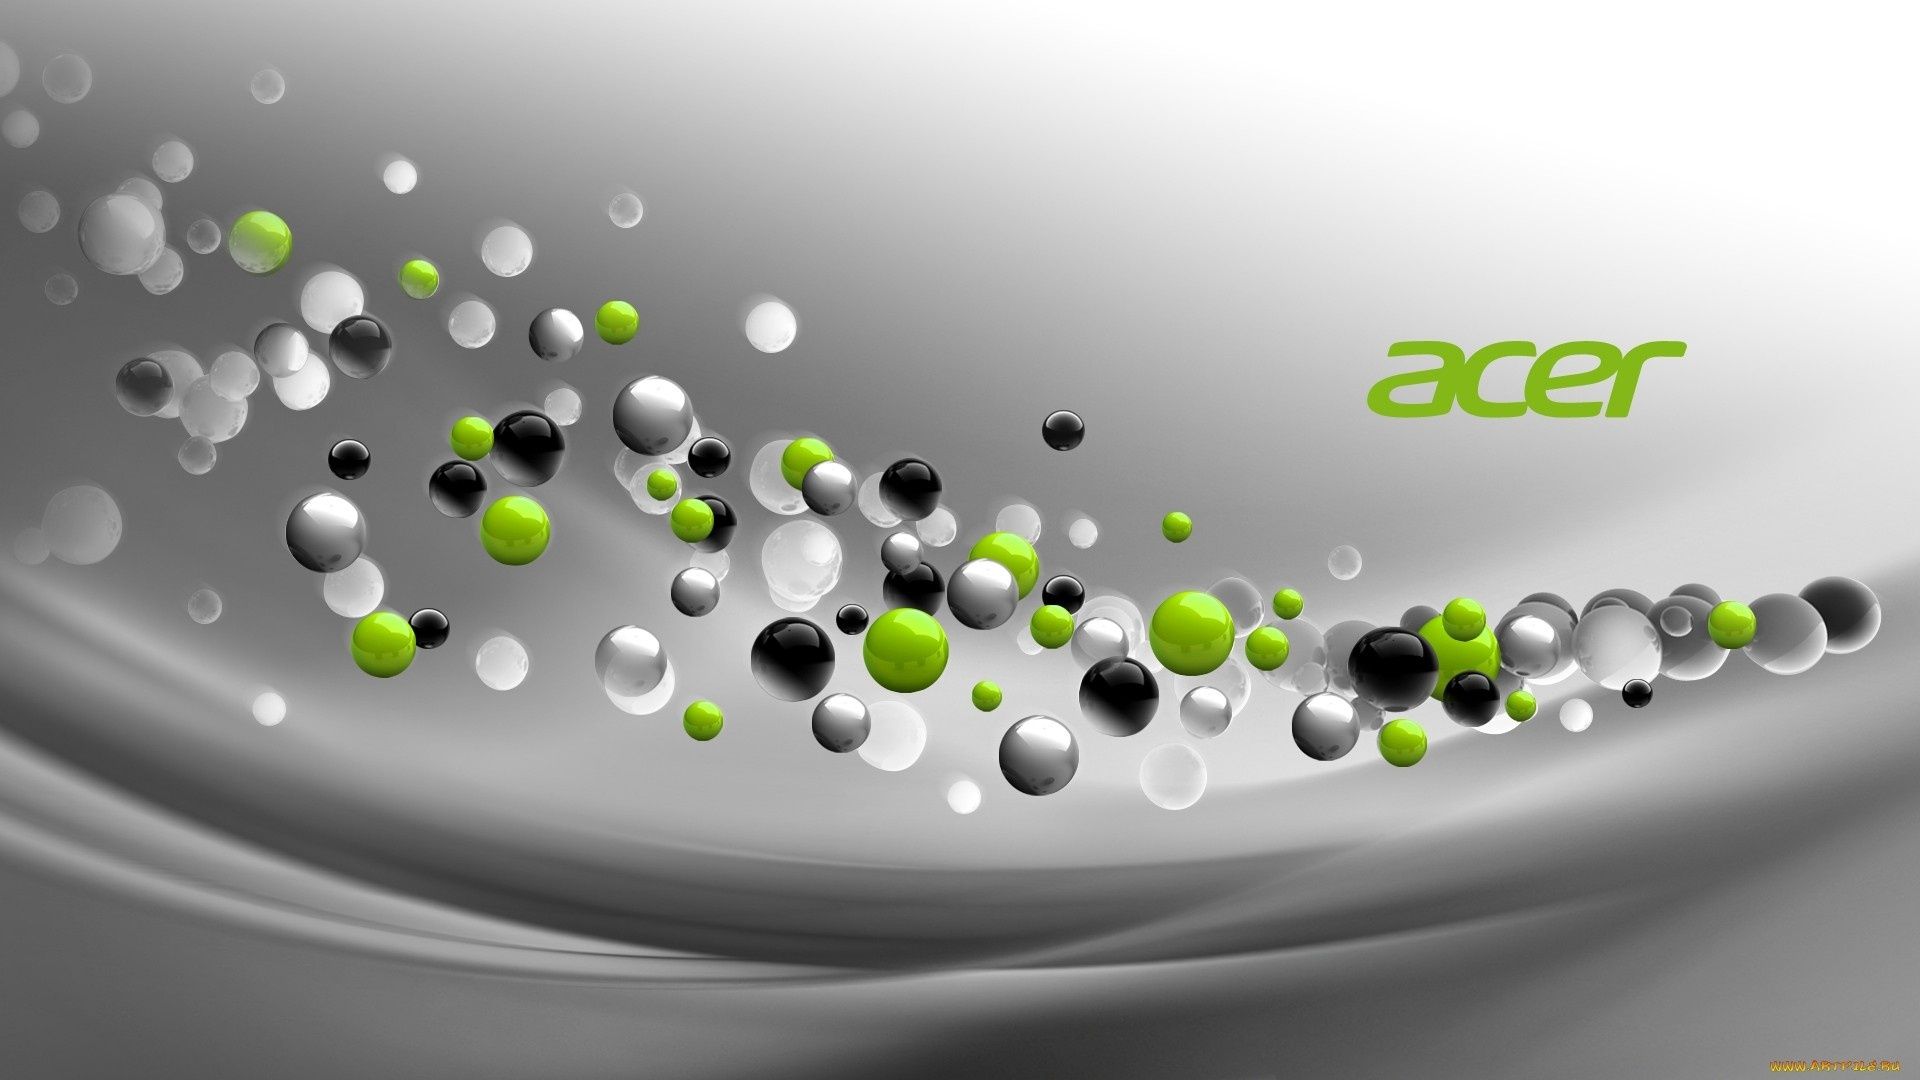 brands and logos water medicine wet drop clean purity health desktop bubble